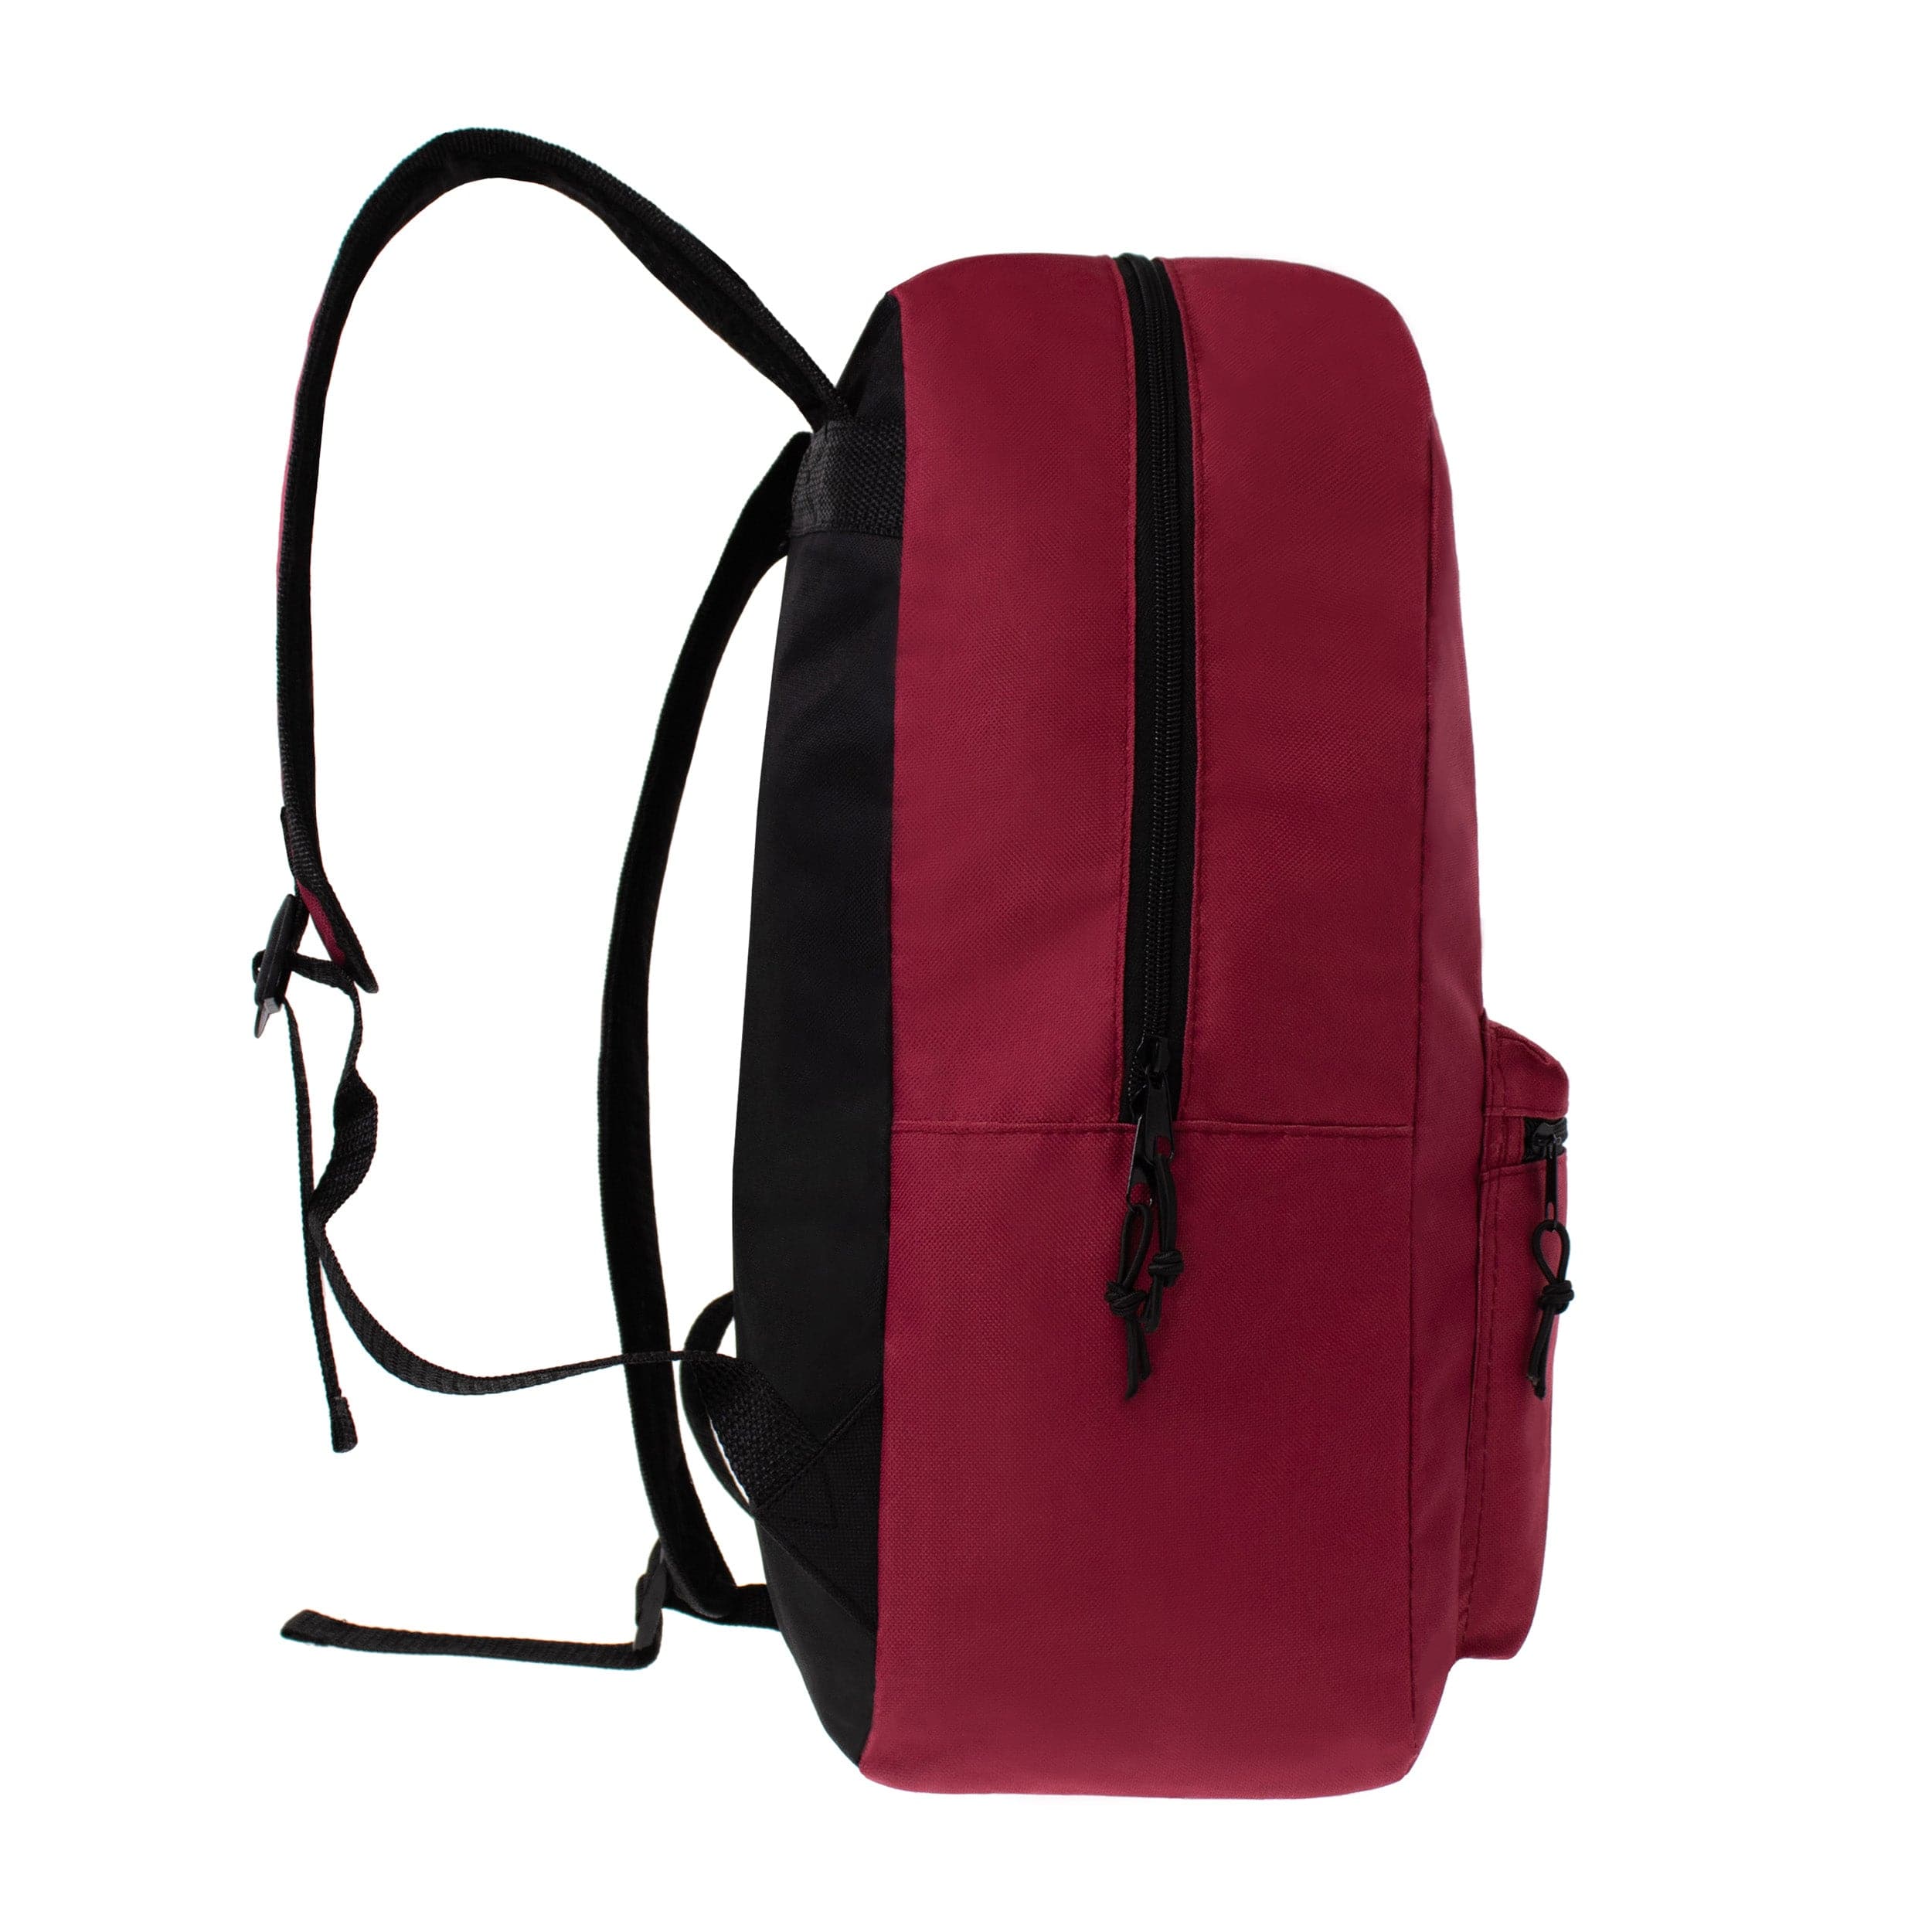 15 Inch Basic Wholesale Backpacks for Boys & Girls